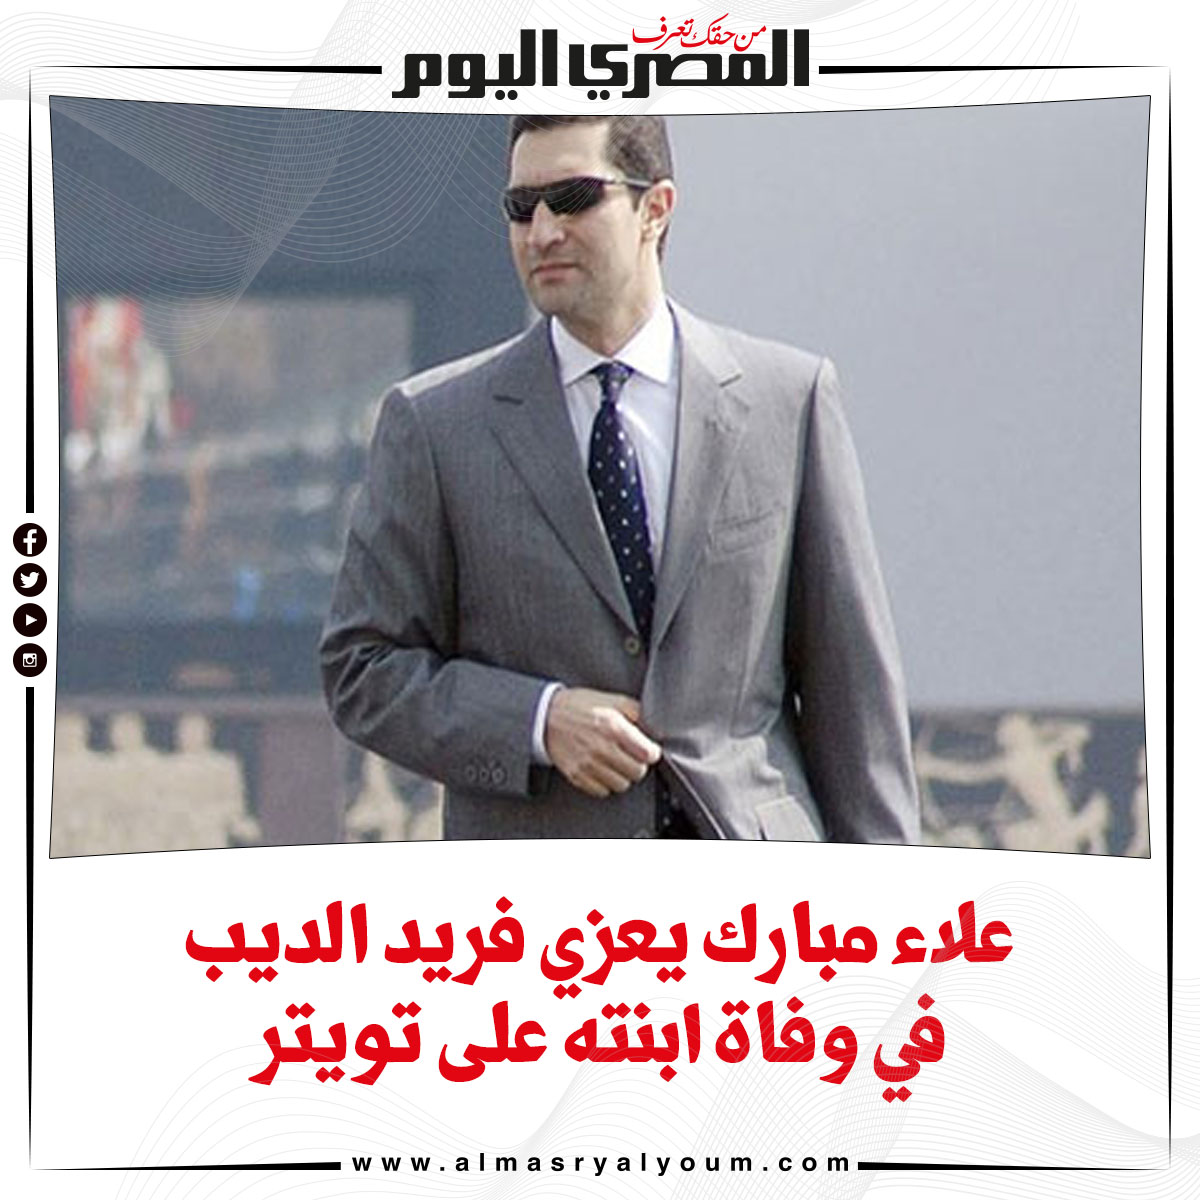 علاء مبارك يعزي فريد الديب في وفاة ابنته على تويتر